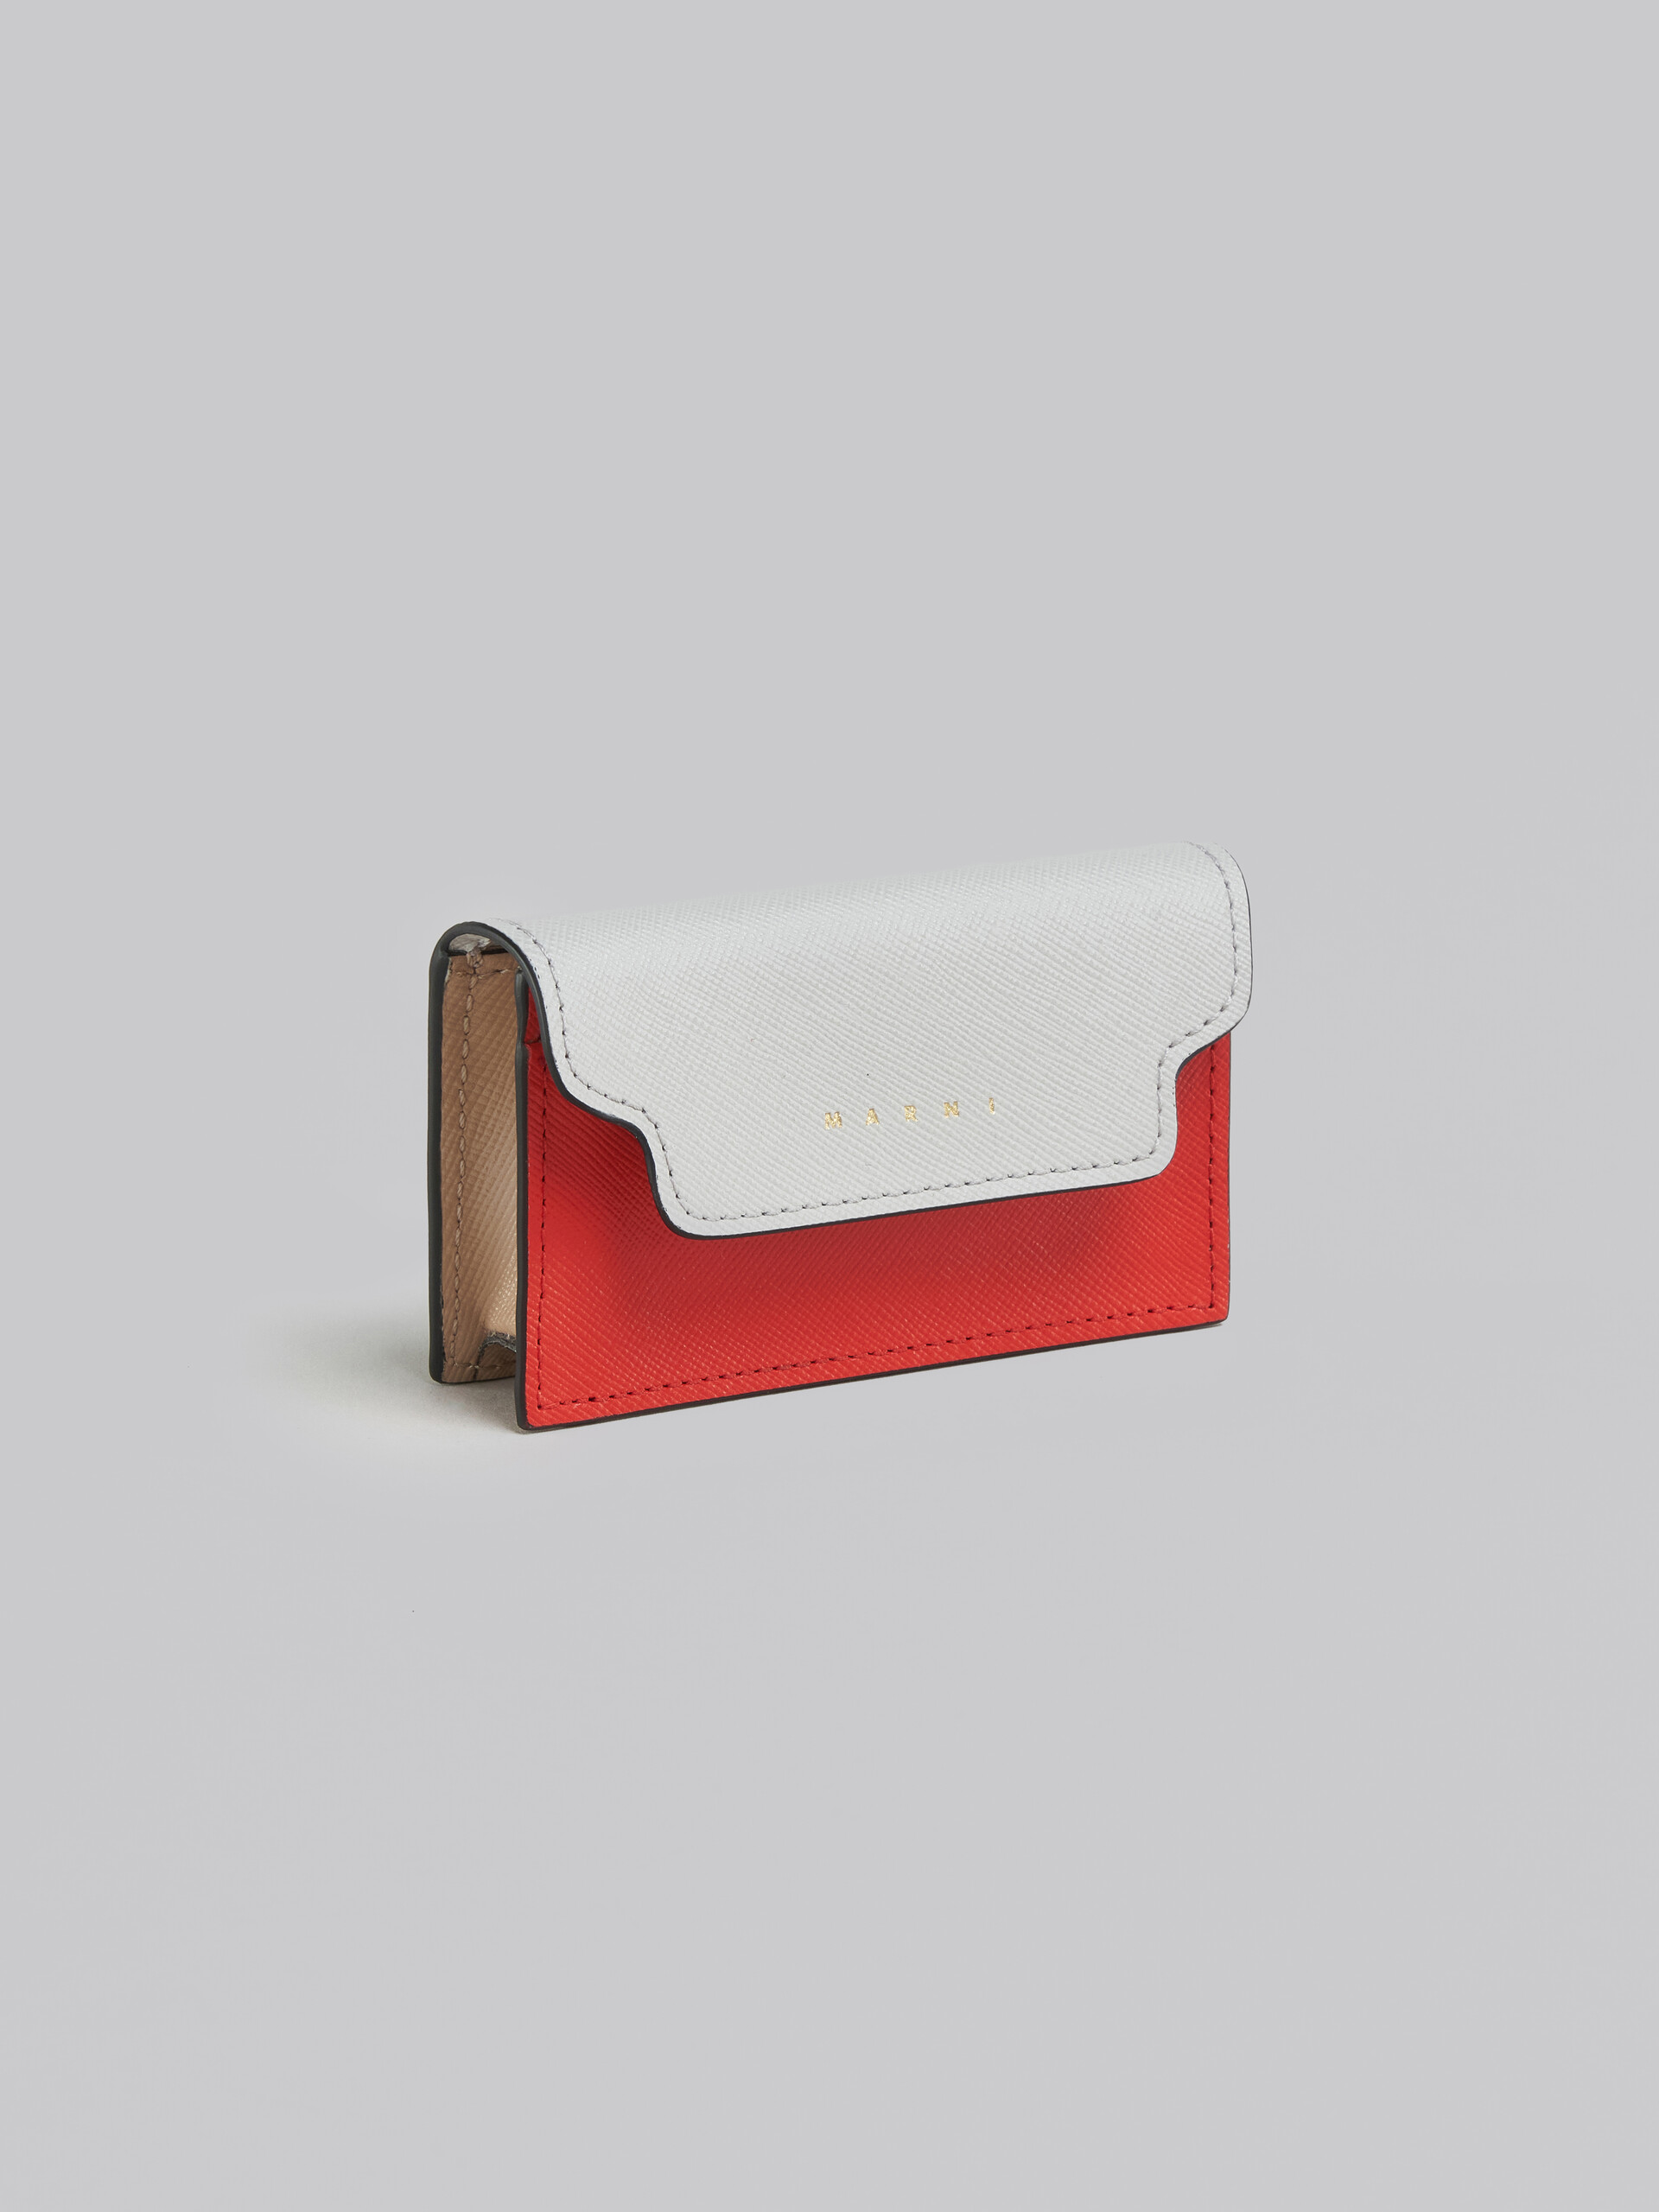 グリーン、ホワイト、ブラウン サフィアーノレザー製ビジネスカードケース - 財布 - Image 4